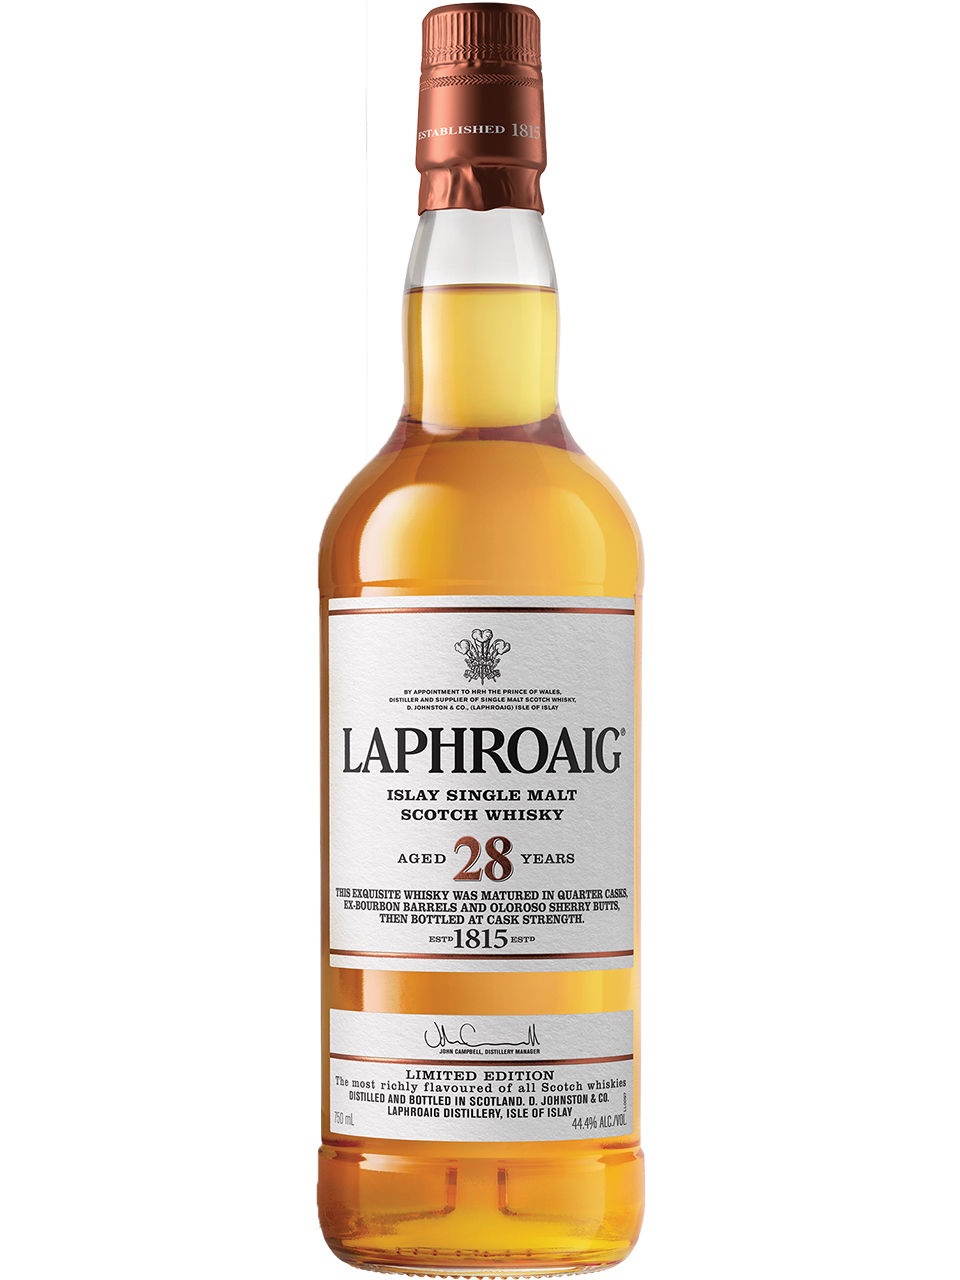 Laphroaig 28 YO Single Malt Scotch Whisky